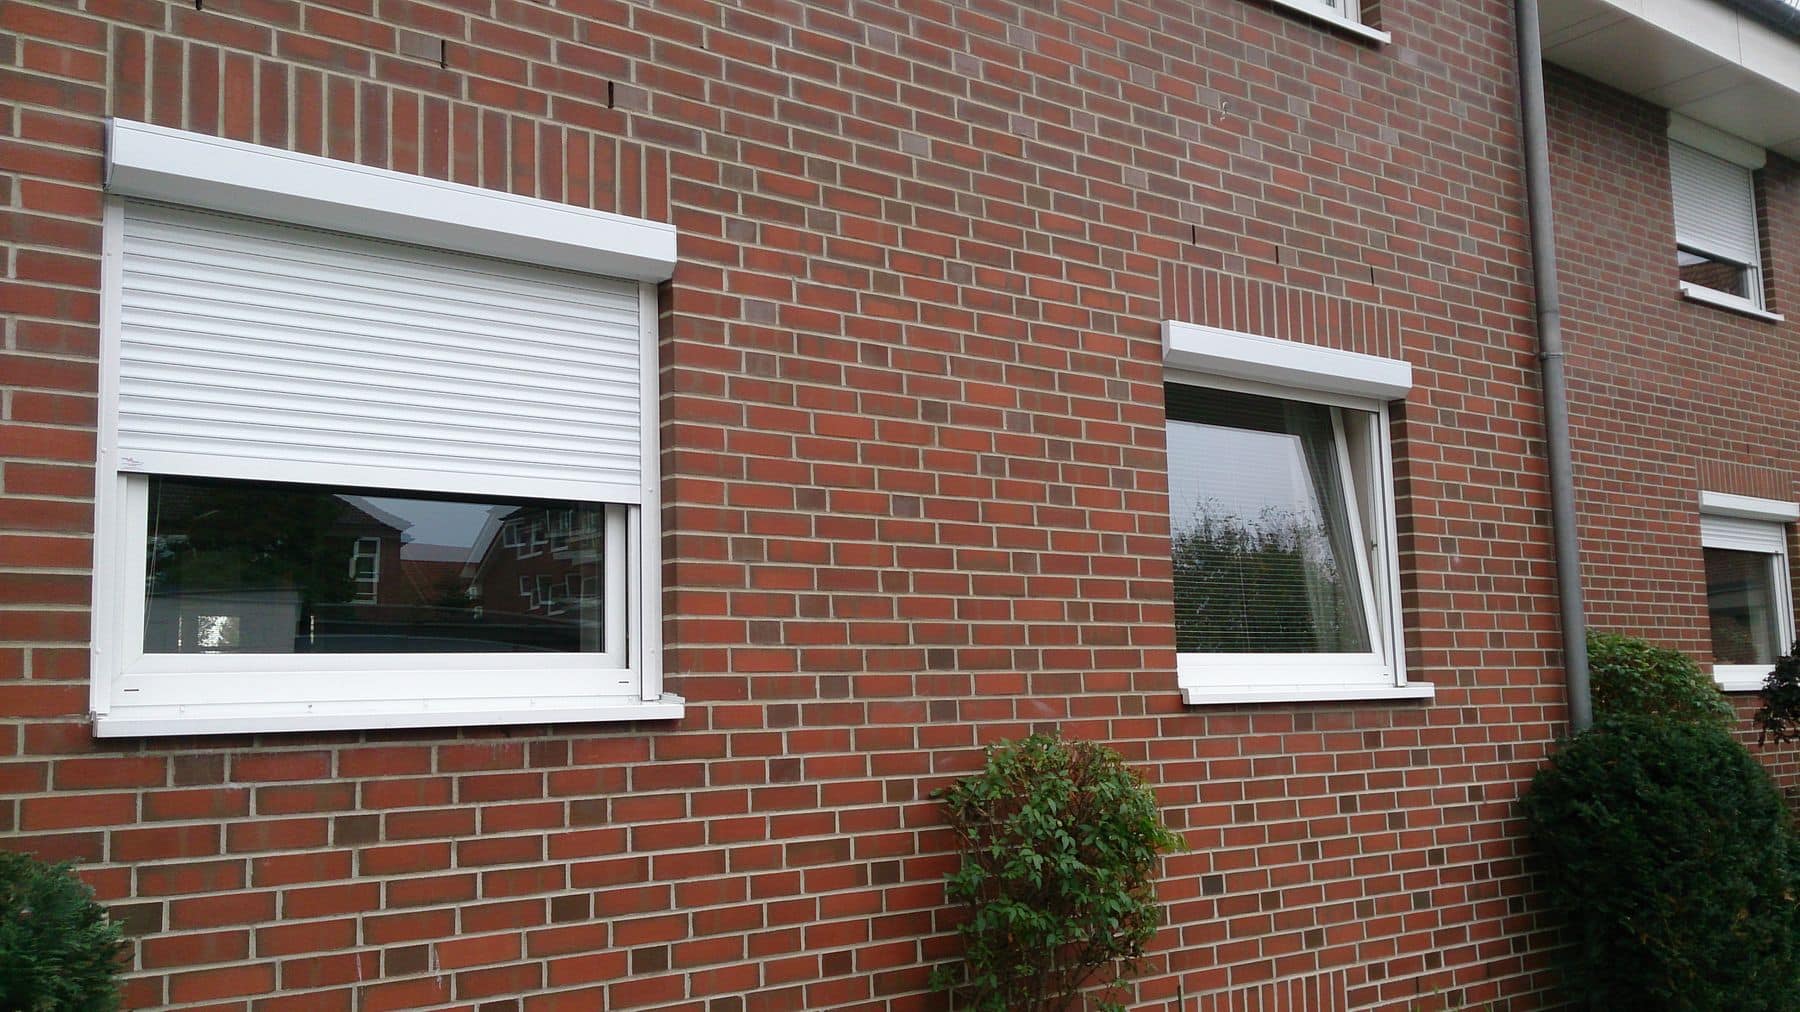 Zwei Fenster mit weißen Rahmen an einer roten Backsteinmauer, eines mit geschlossenen Jalousien und das andere offen zur Sicht.